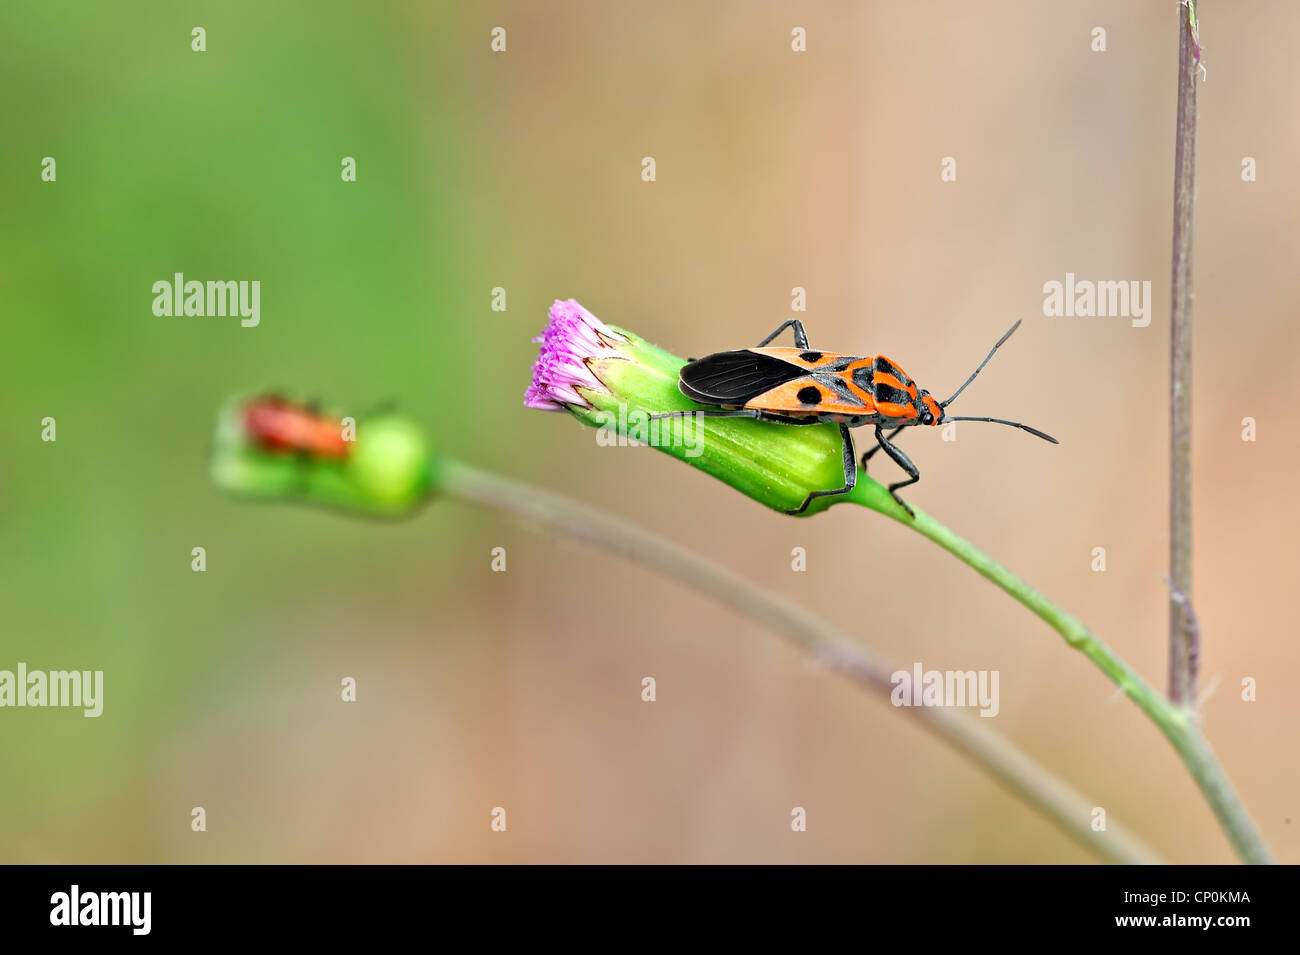 beetle Stock Photo